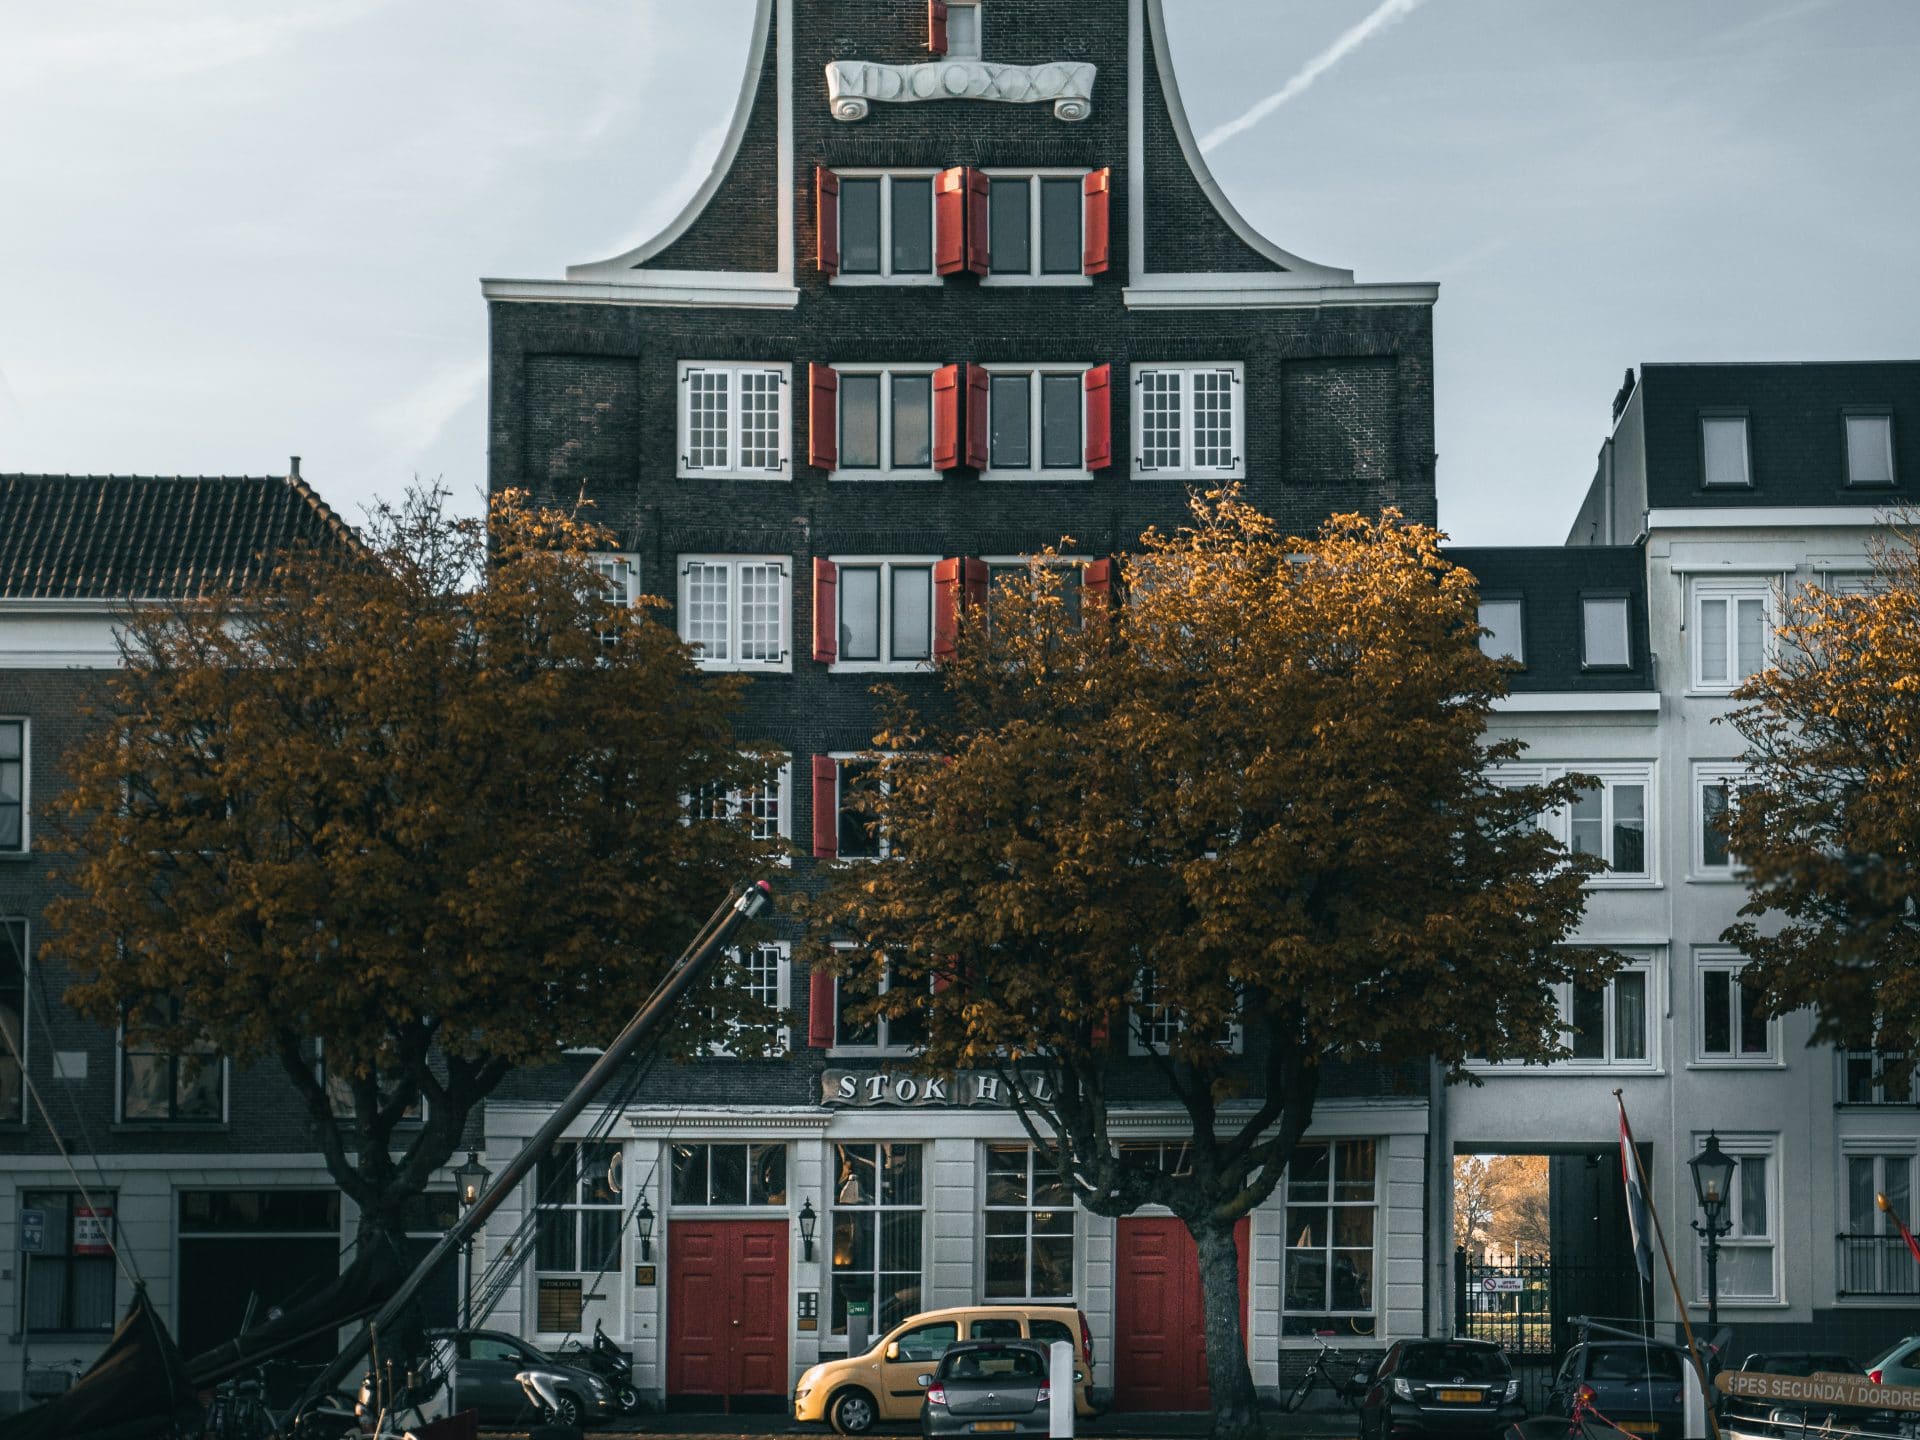 Foto ferdy francis - Licht op Dordrecht